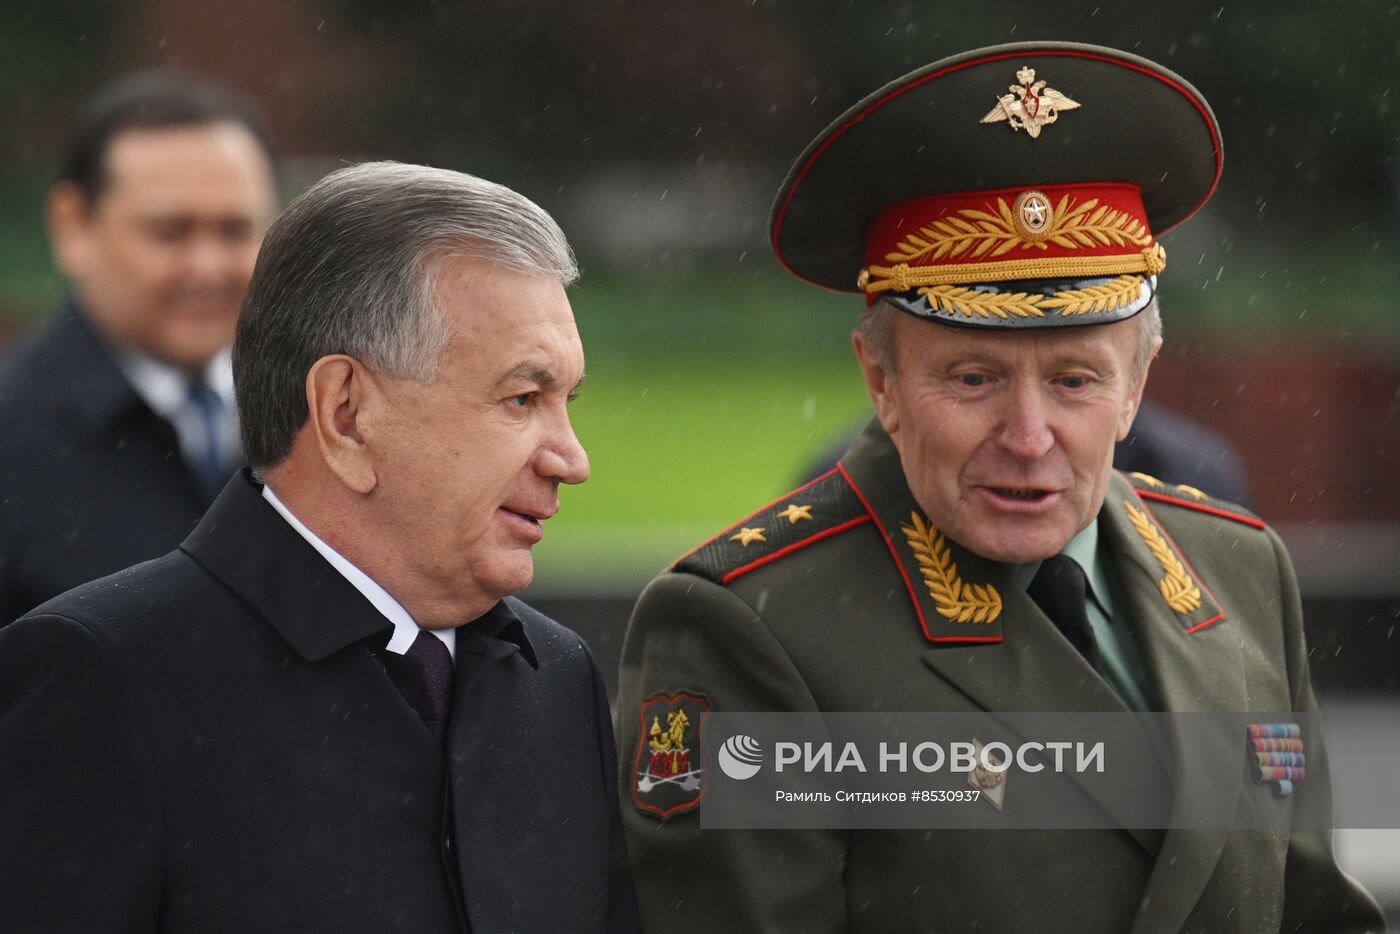 Президент Узбекистана Ш. Мирзиеев возложил цветы к Могиле Неизвестного Солдата